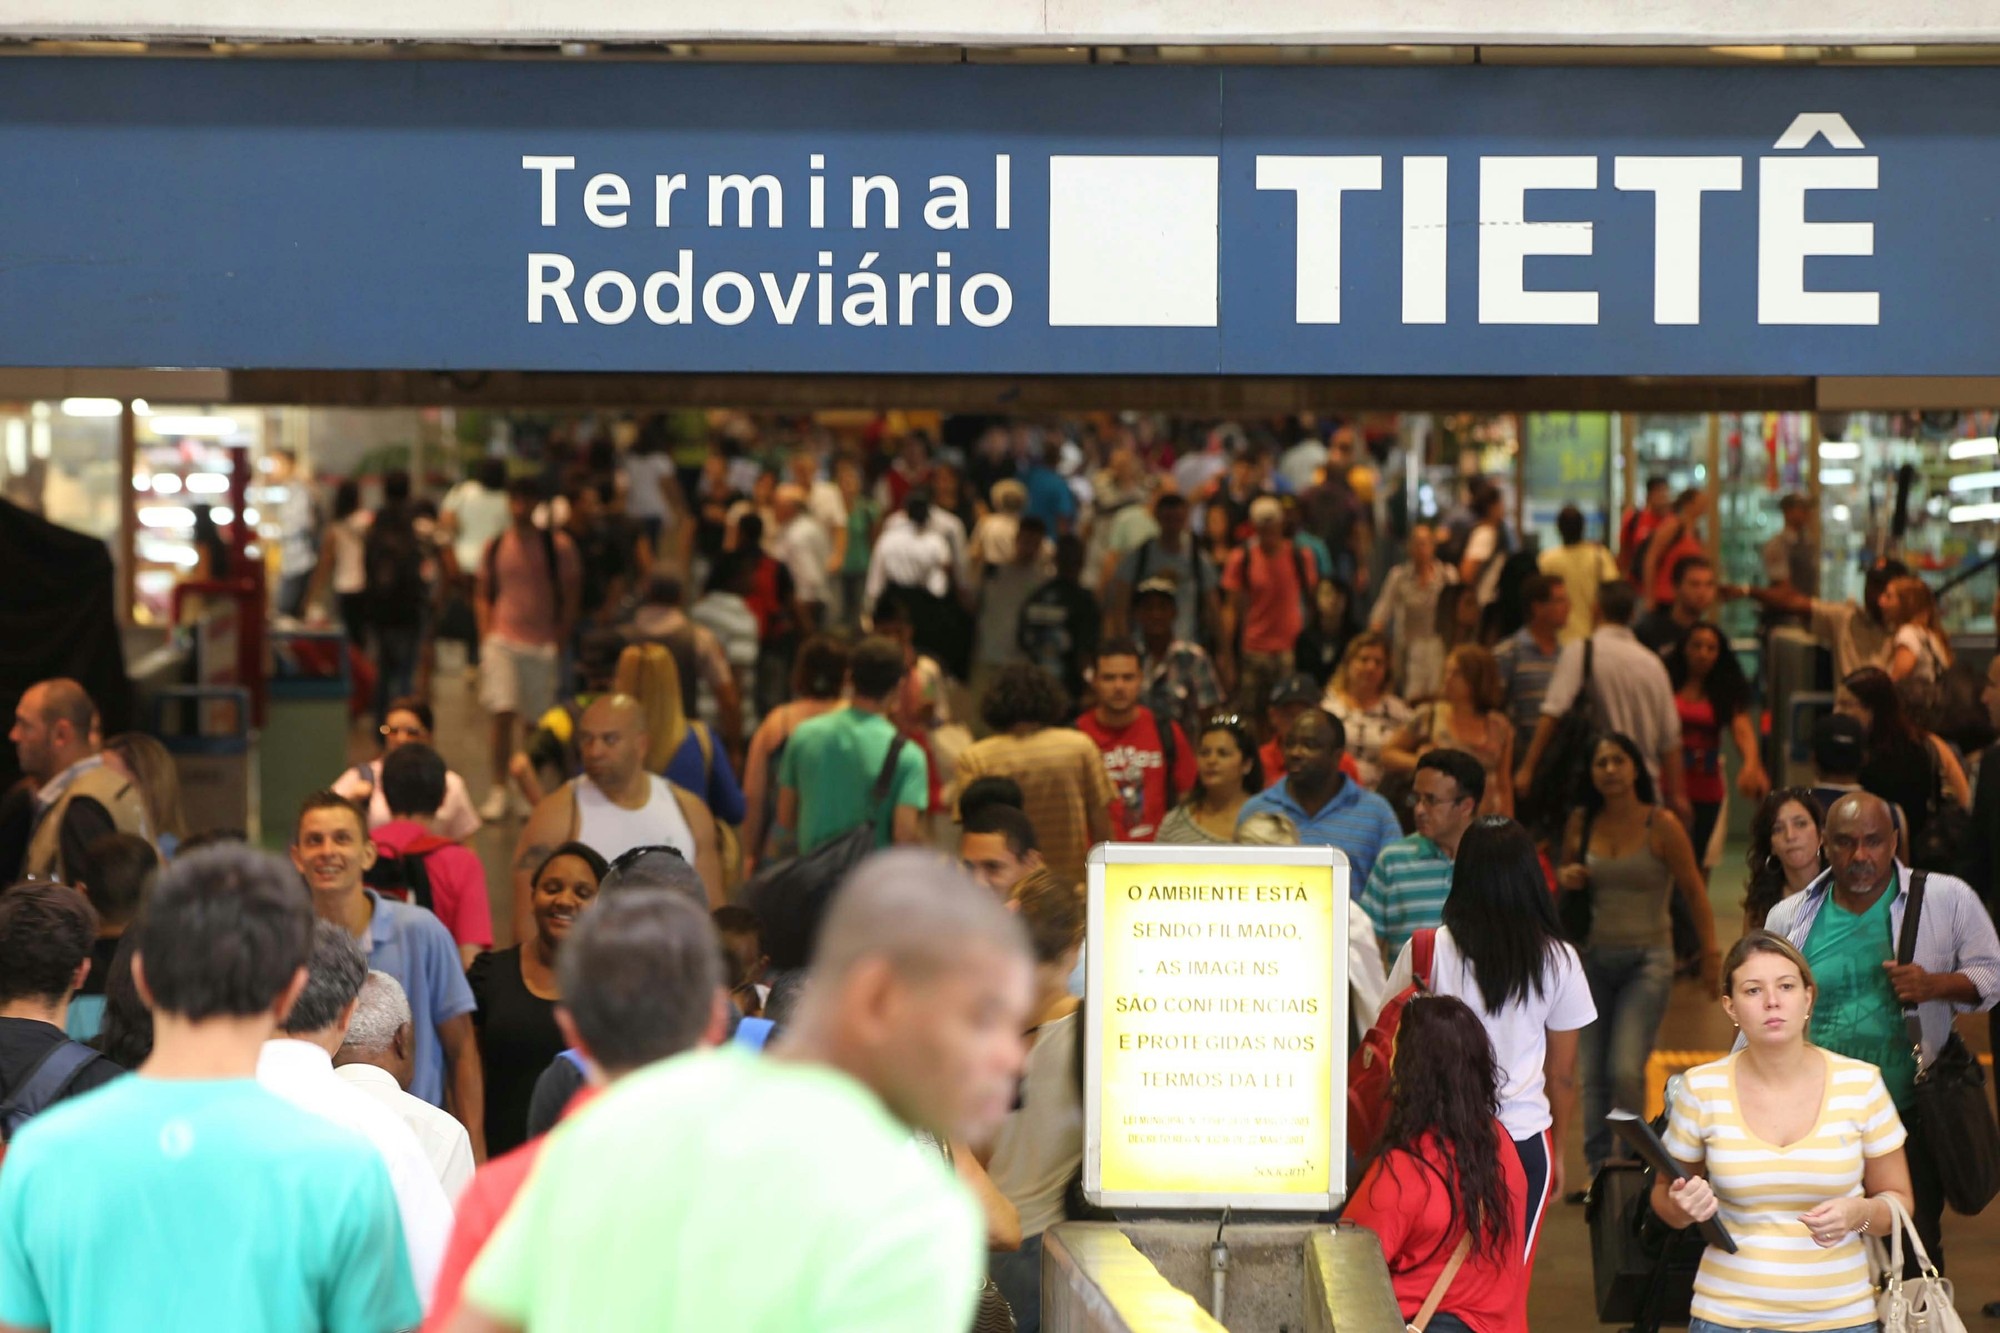 Coronavírus: ônibus que partiriam do Terminal Rodoviário Tietê em SP para o Rio de Janeiro são cancelados thumbnail